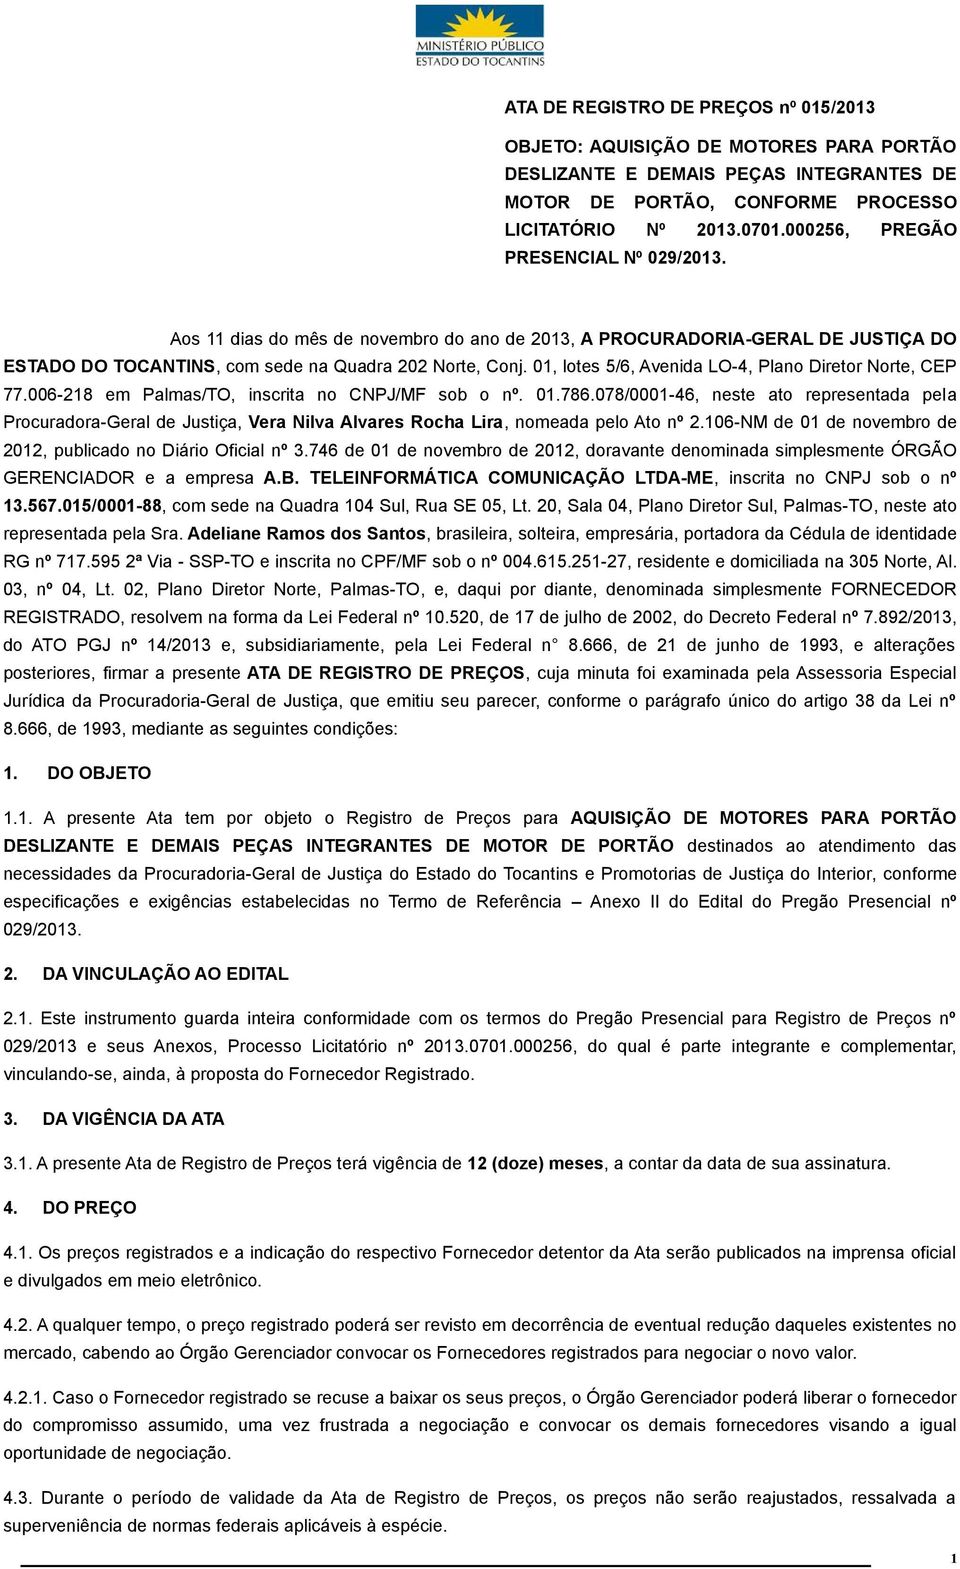 01, lotes 5/6, Avenida LO-4, Plano Diretor Norte, CEP 77.006-218 em Palmas/TO, inscrita no CNPJ/MF sob o nº. 01.786.